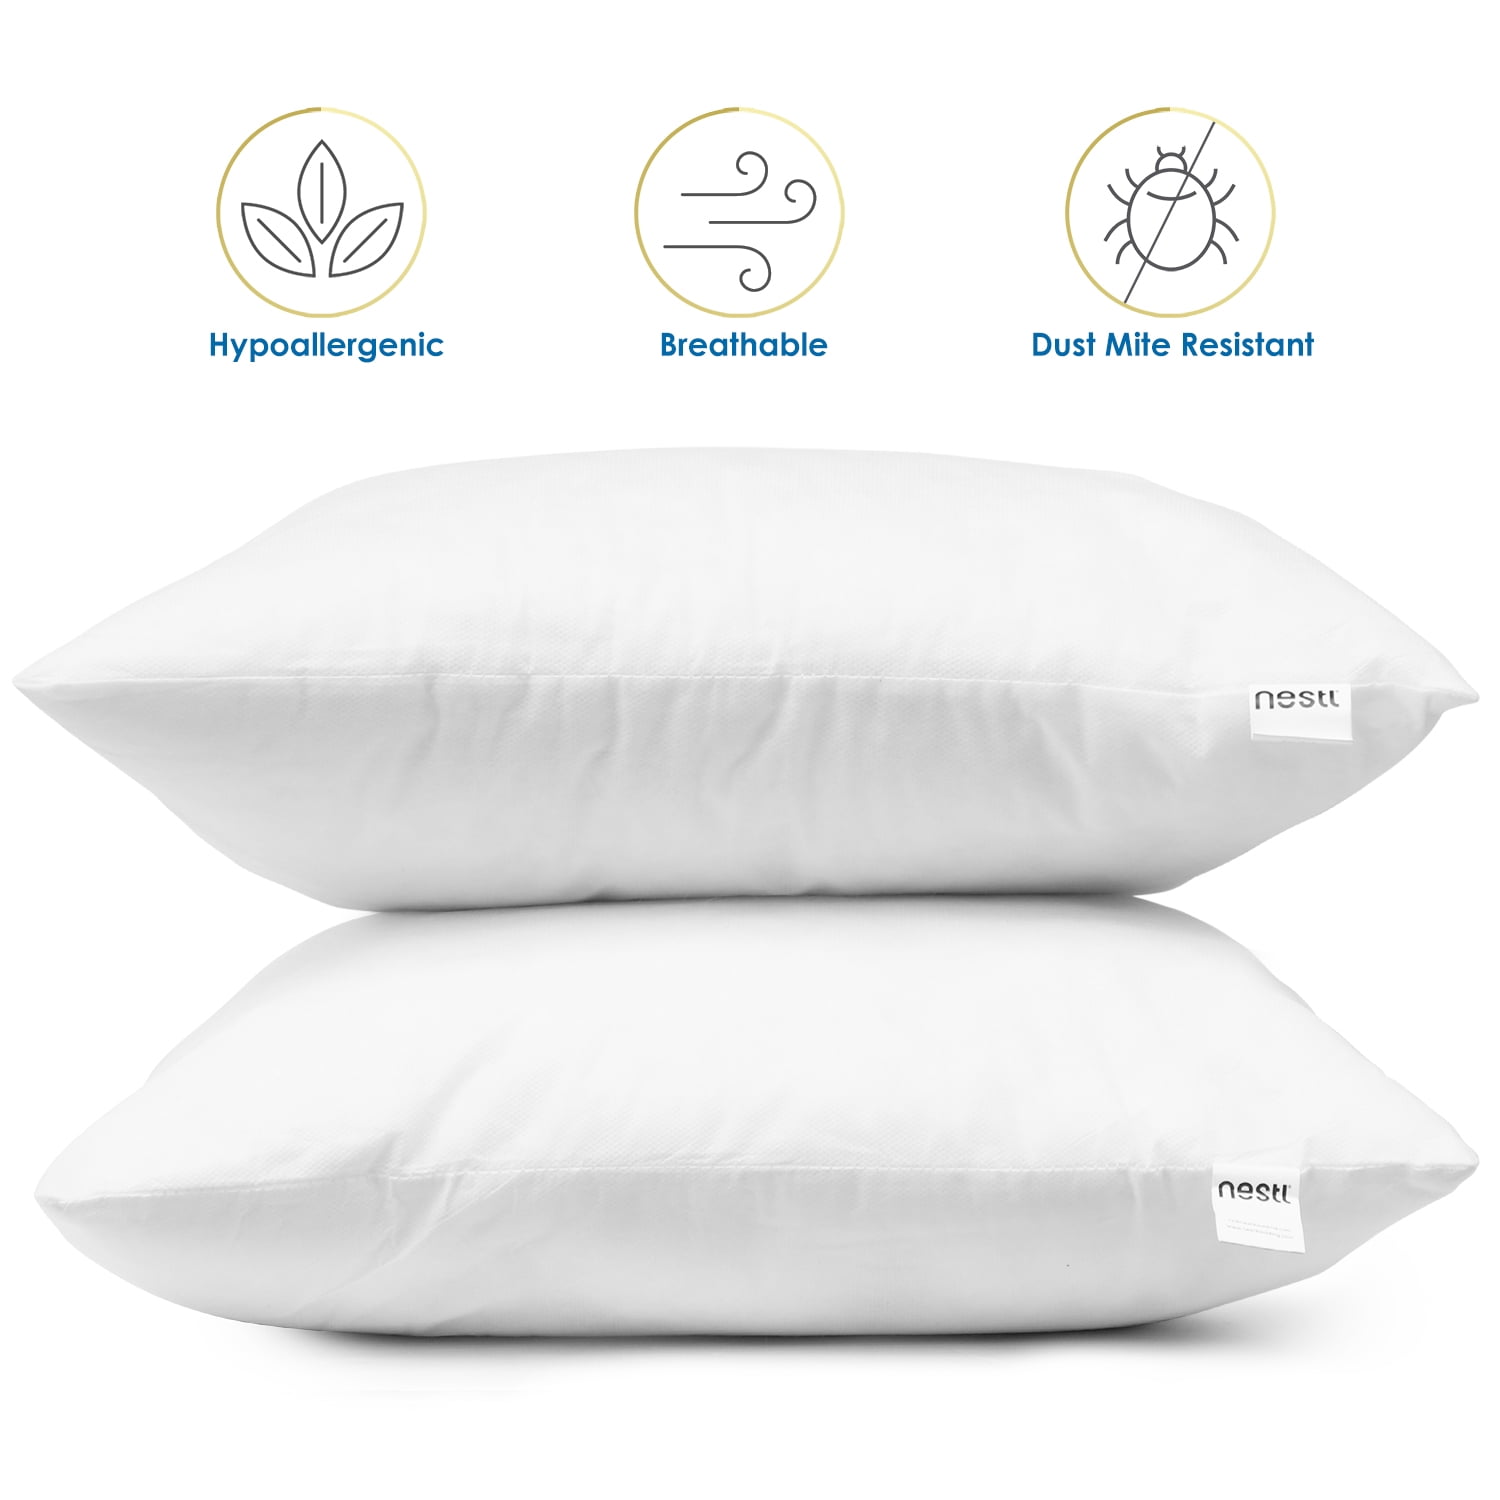 Square Pillow Inserts Mini Small 8x8, 9x9, 12x12, 14x14 Premium